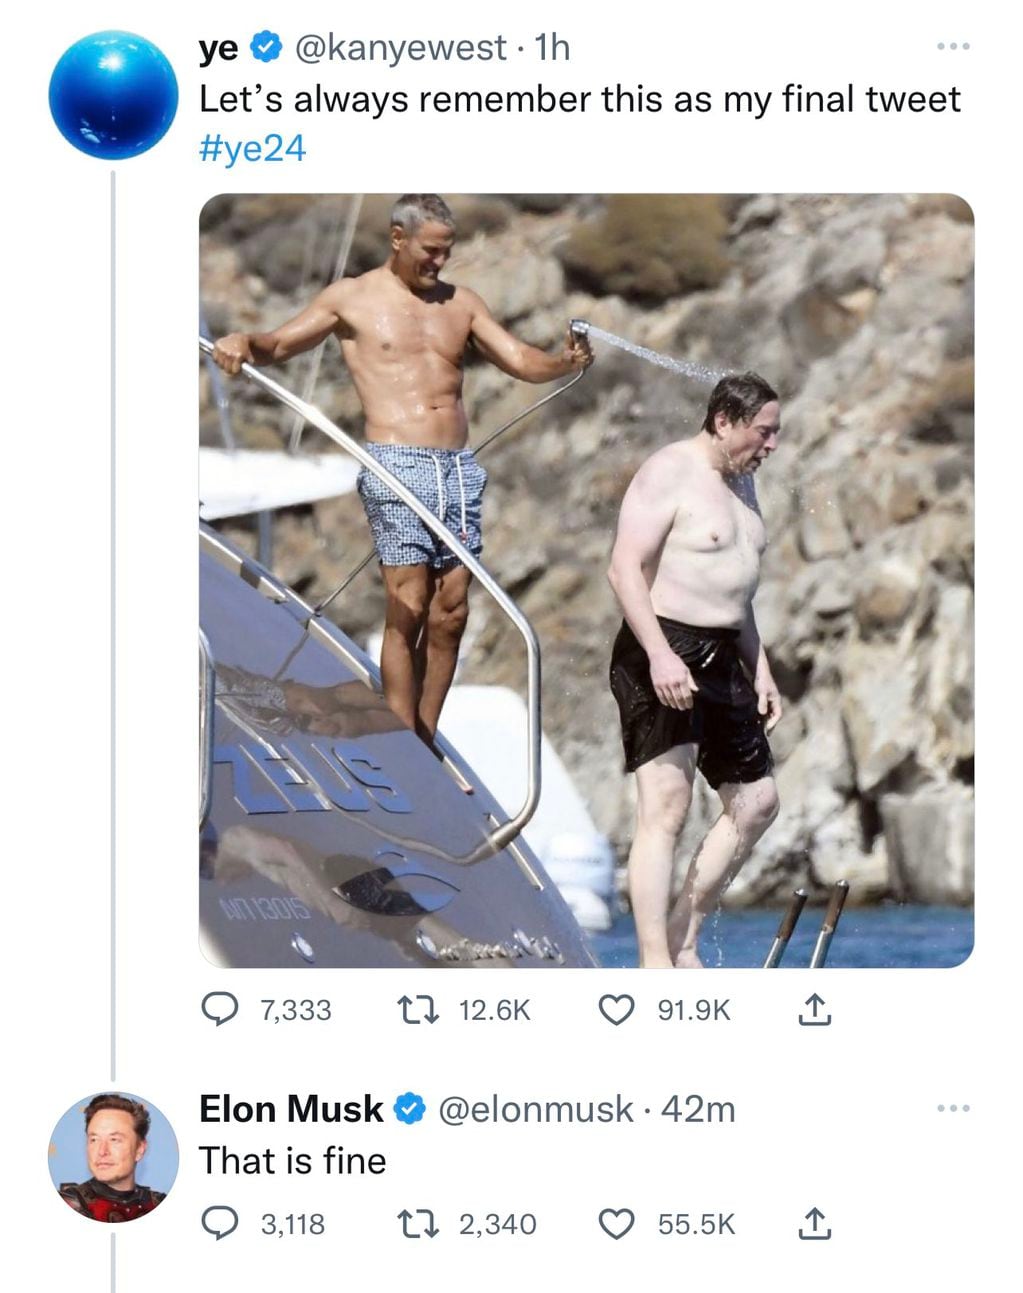 Elon Musk decidió suspender la cuenta de Twitter de Kanye West